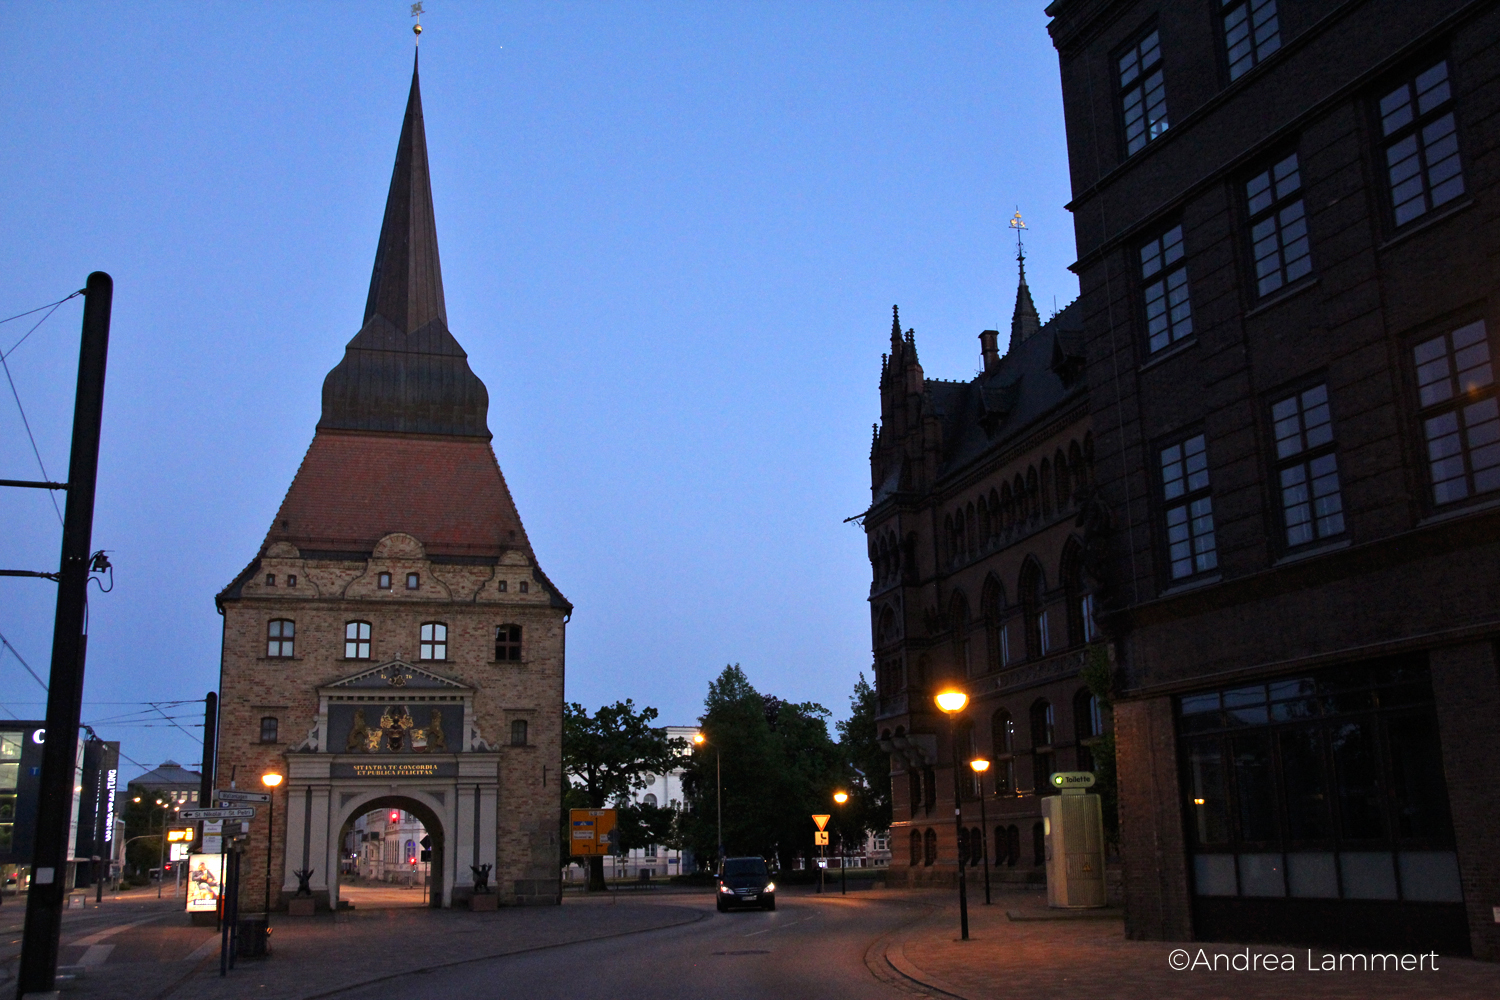 Hansestadt, Abends: Das Steintor von der Stadtseite aus